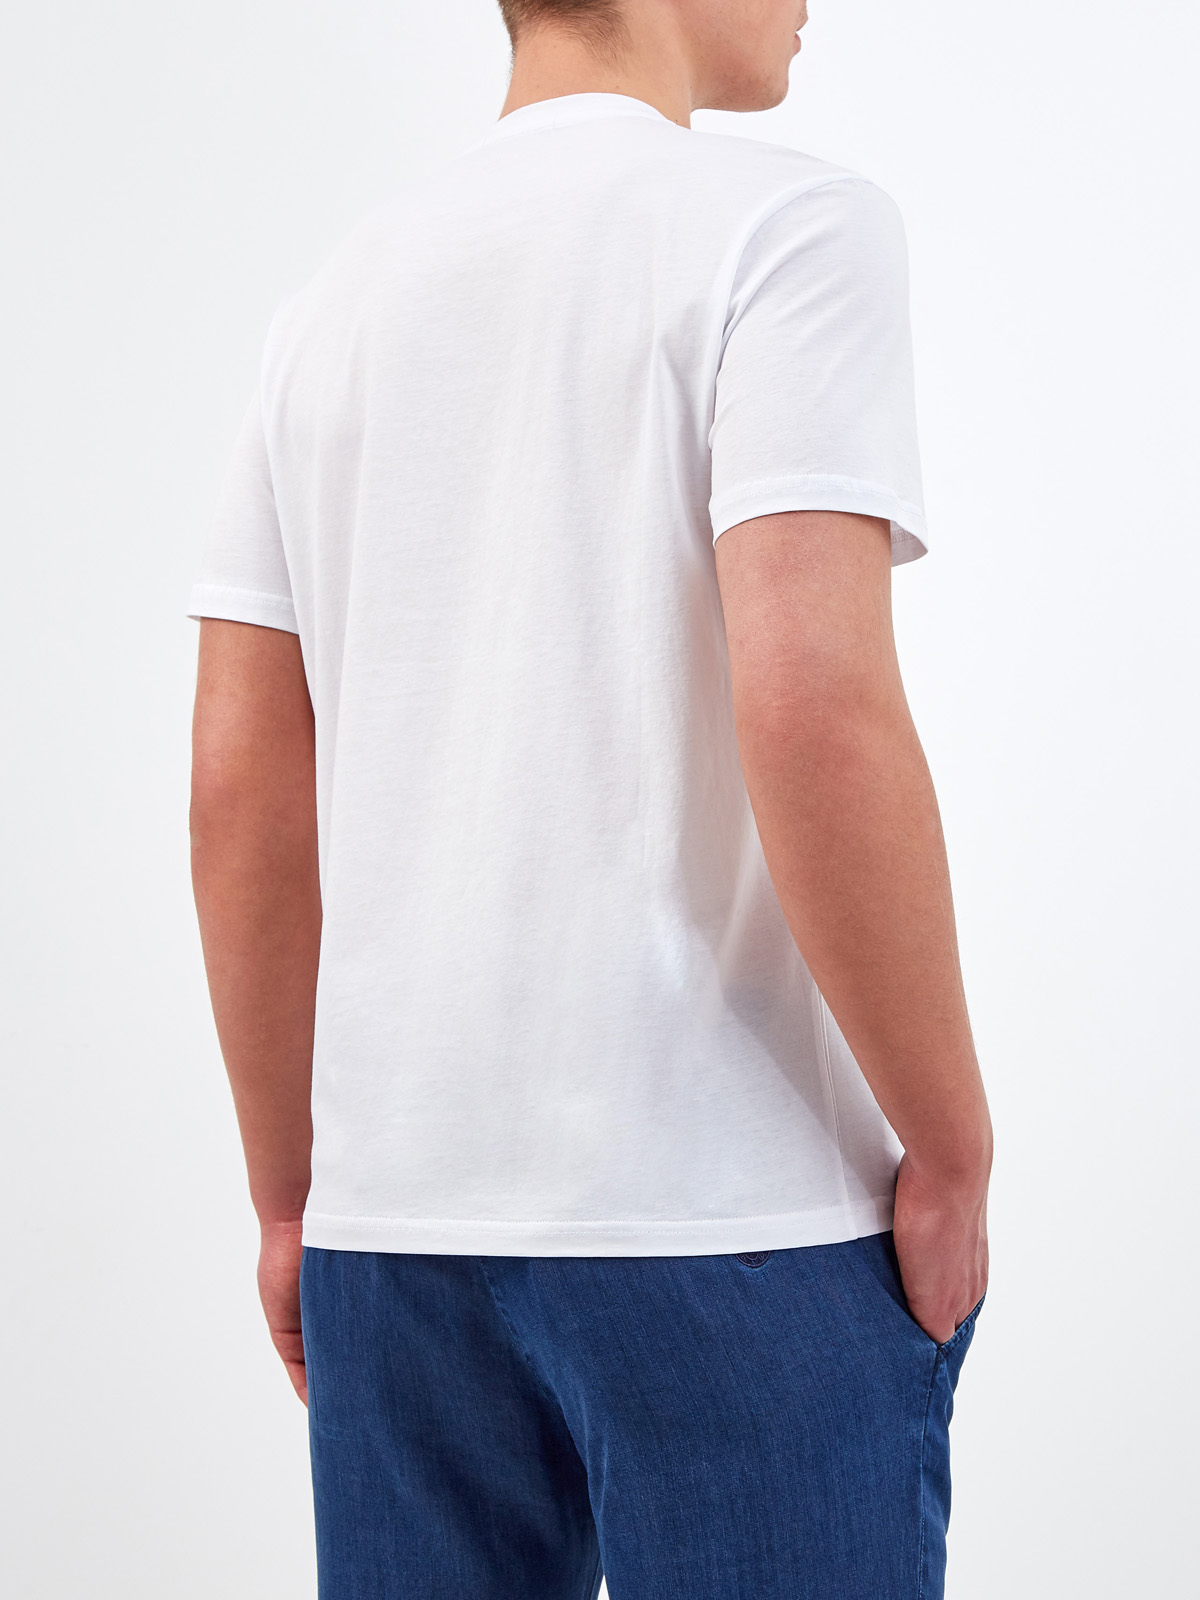 Белая футболка из гладкого хлопка джерси CUDGI, цвет белый, размер L;XL;2XL;M - фото 4